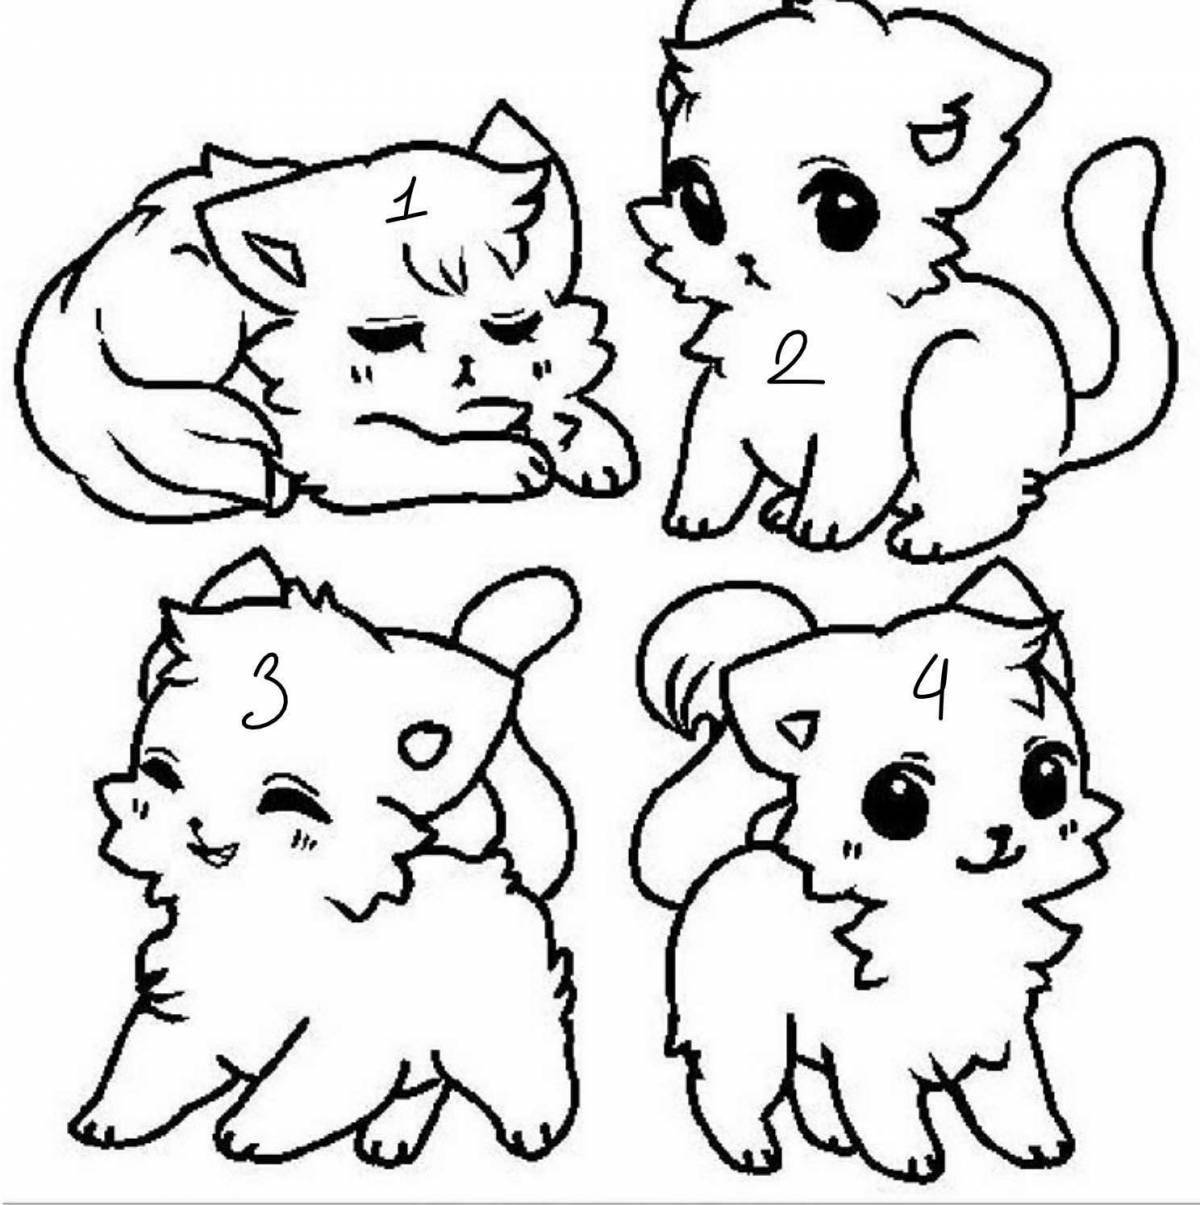 Cute little cats #11